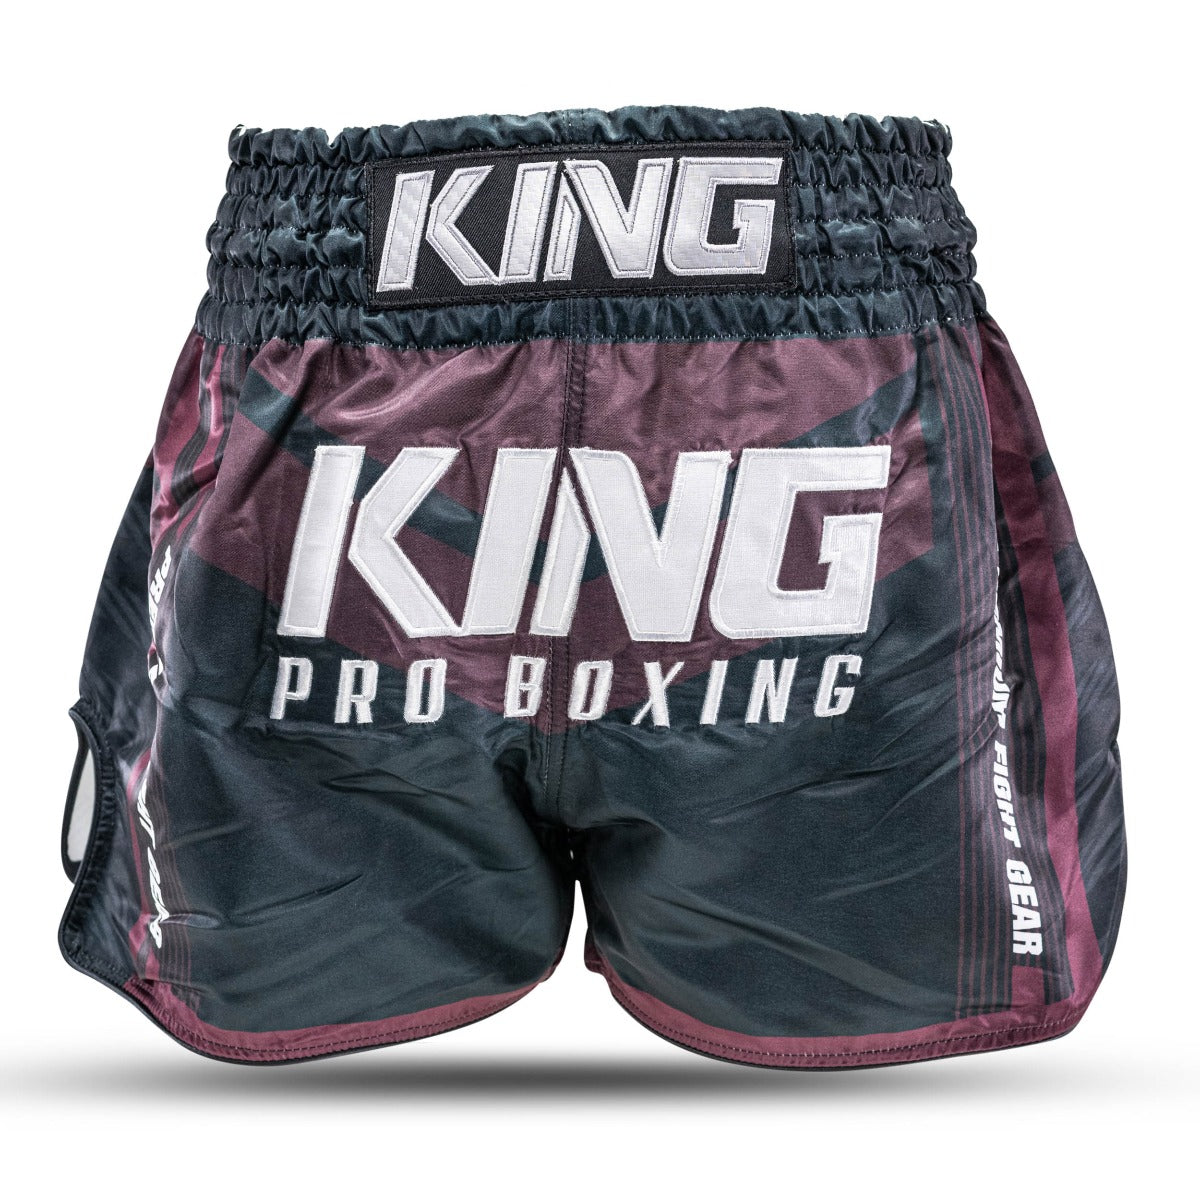 King PRO boxing muay Thai trunk - KPB ENDURANCE 1